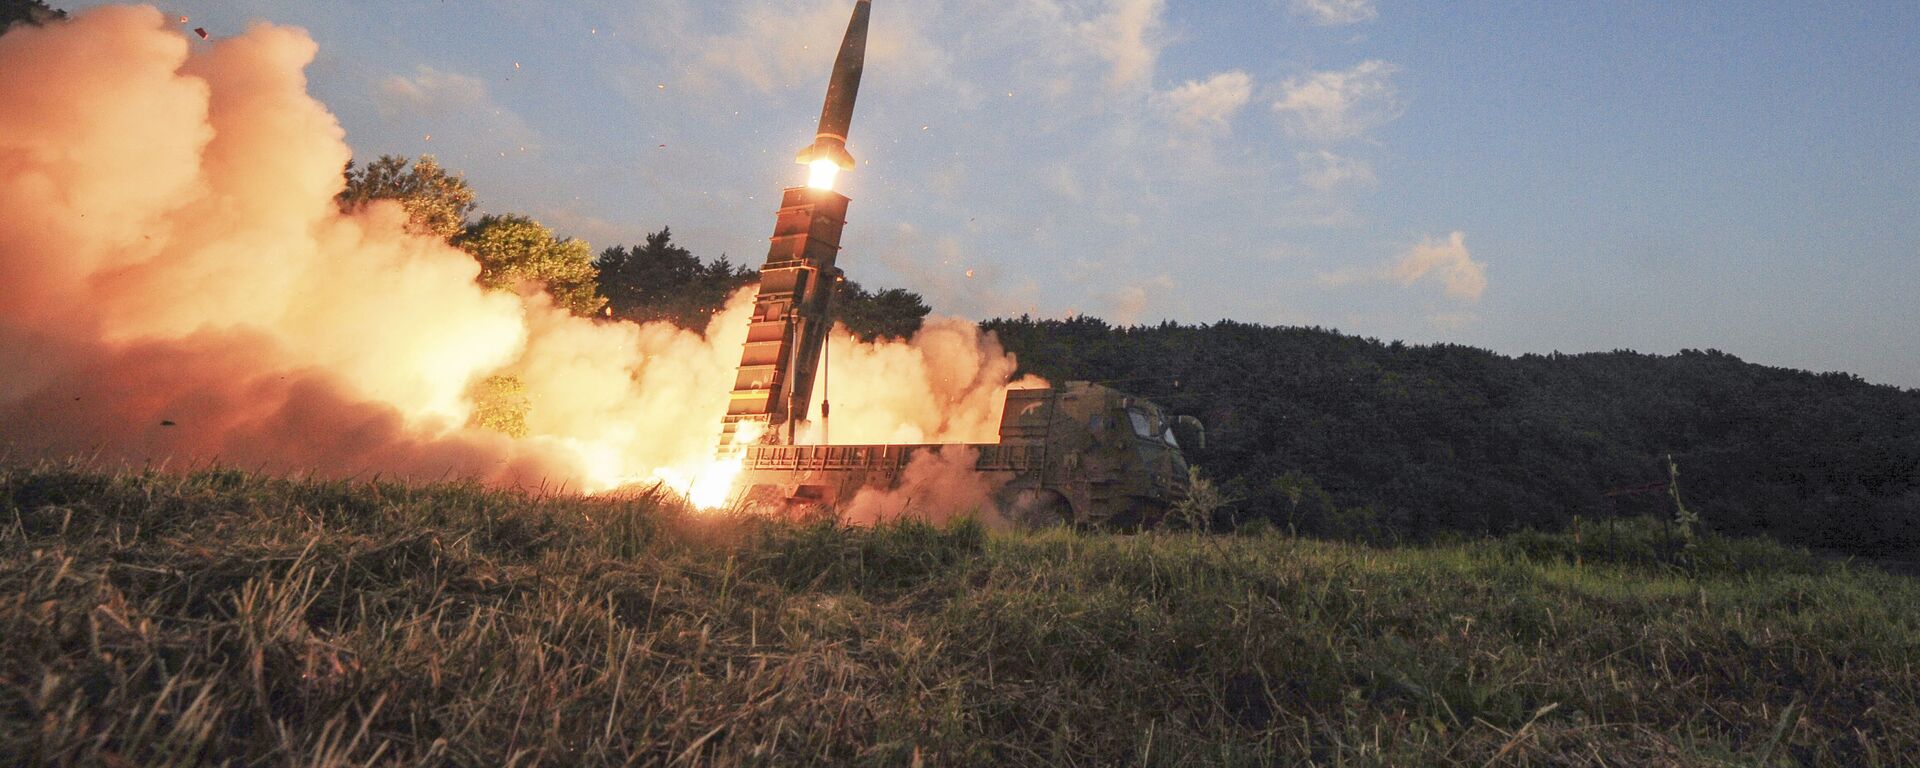 Запуск южнокорейской баллистической ракеты малой дальности Hyunmoo II в ходе совместных военных учений США и Южной Кореи - Sputnik International, 1920, 01.12.2021